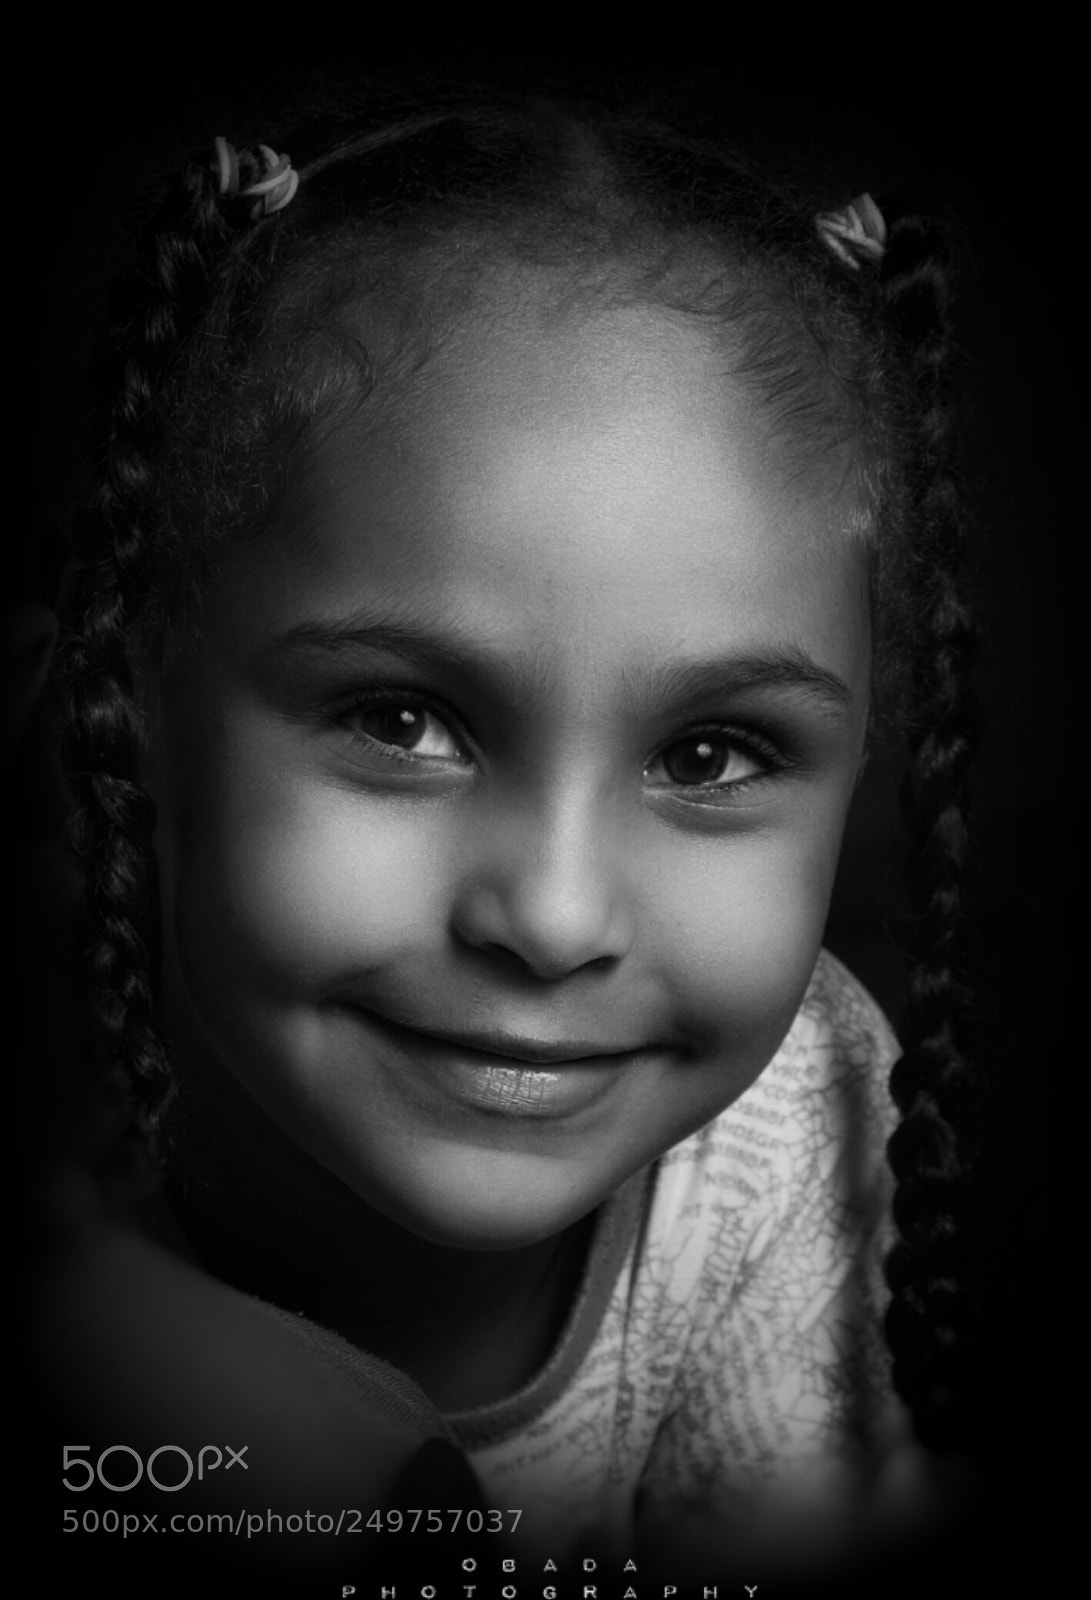 Nikon D7100 sample photo. Portrait kids photography